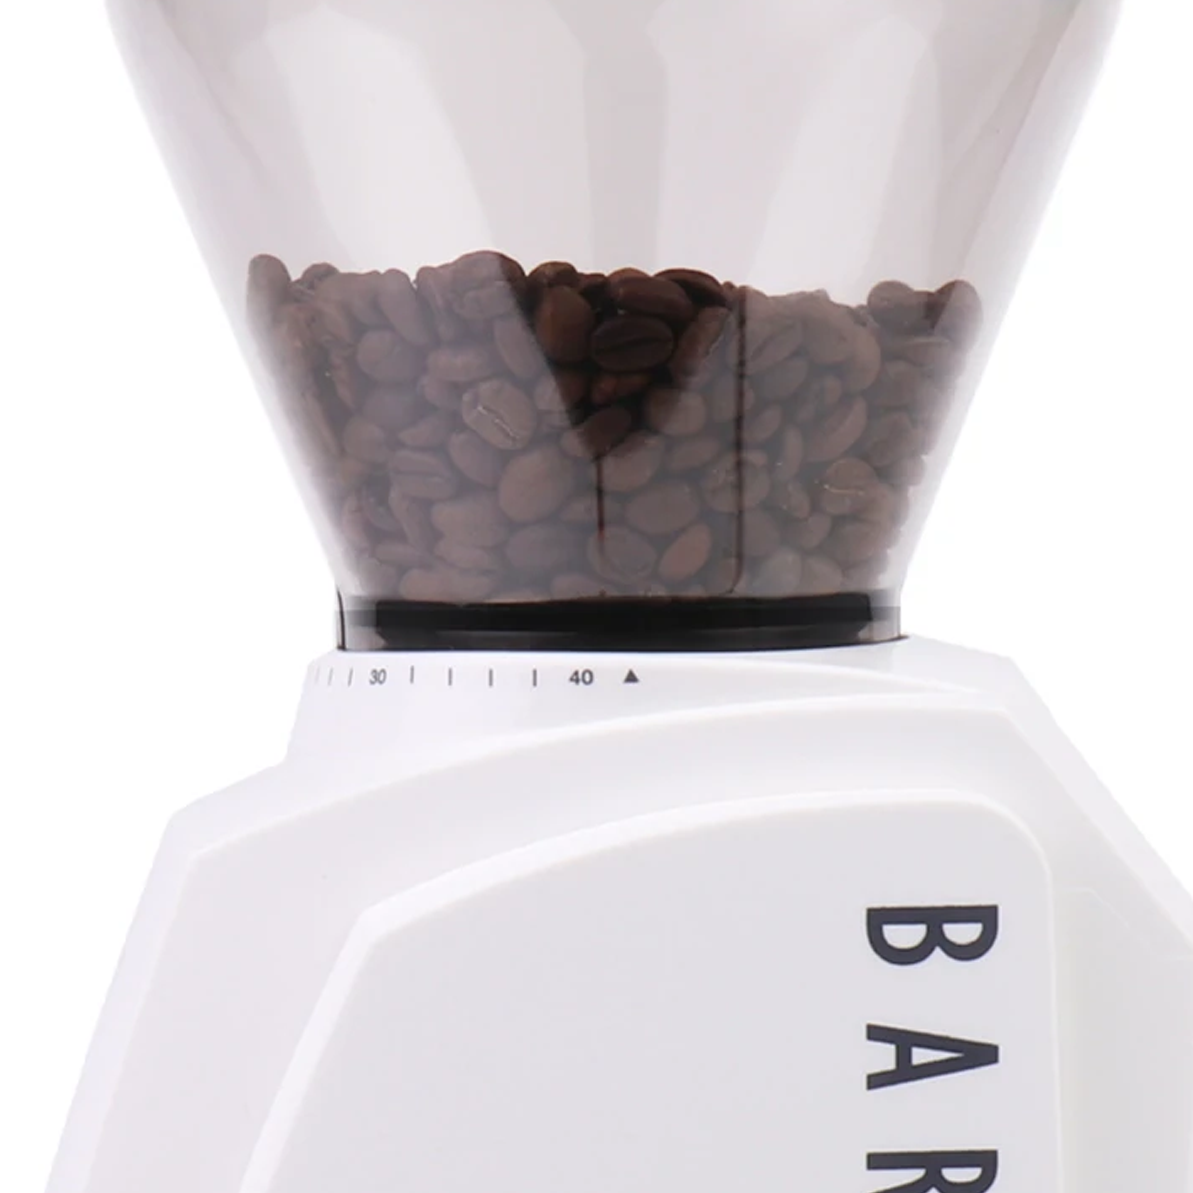 Baratza Encore Burr Coffee Grinder